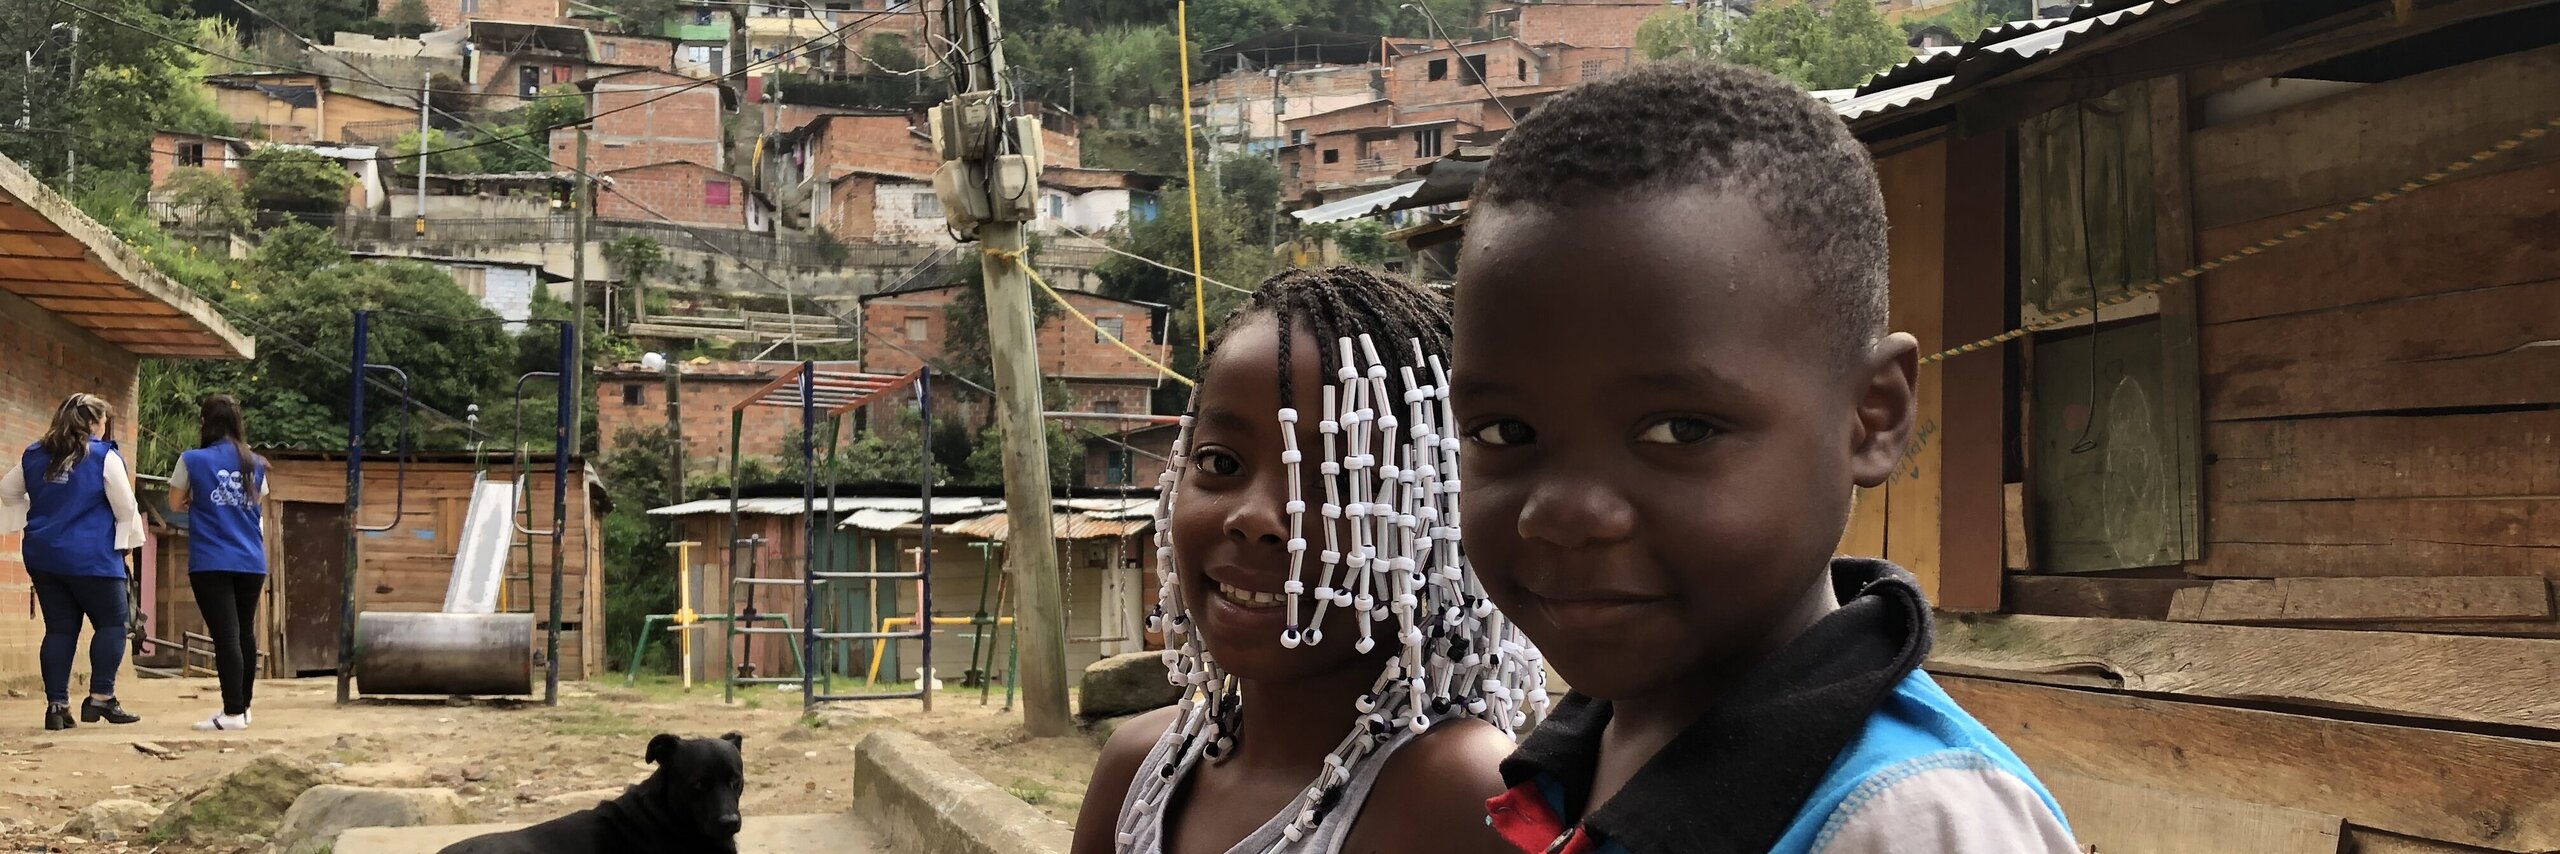 Kinder im Armenviertel von Medellín